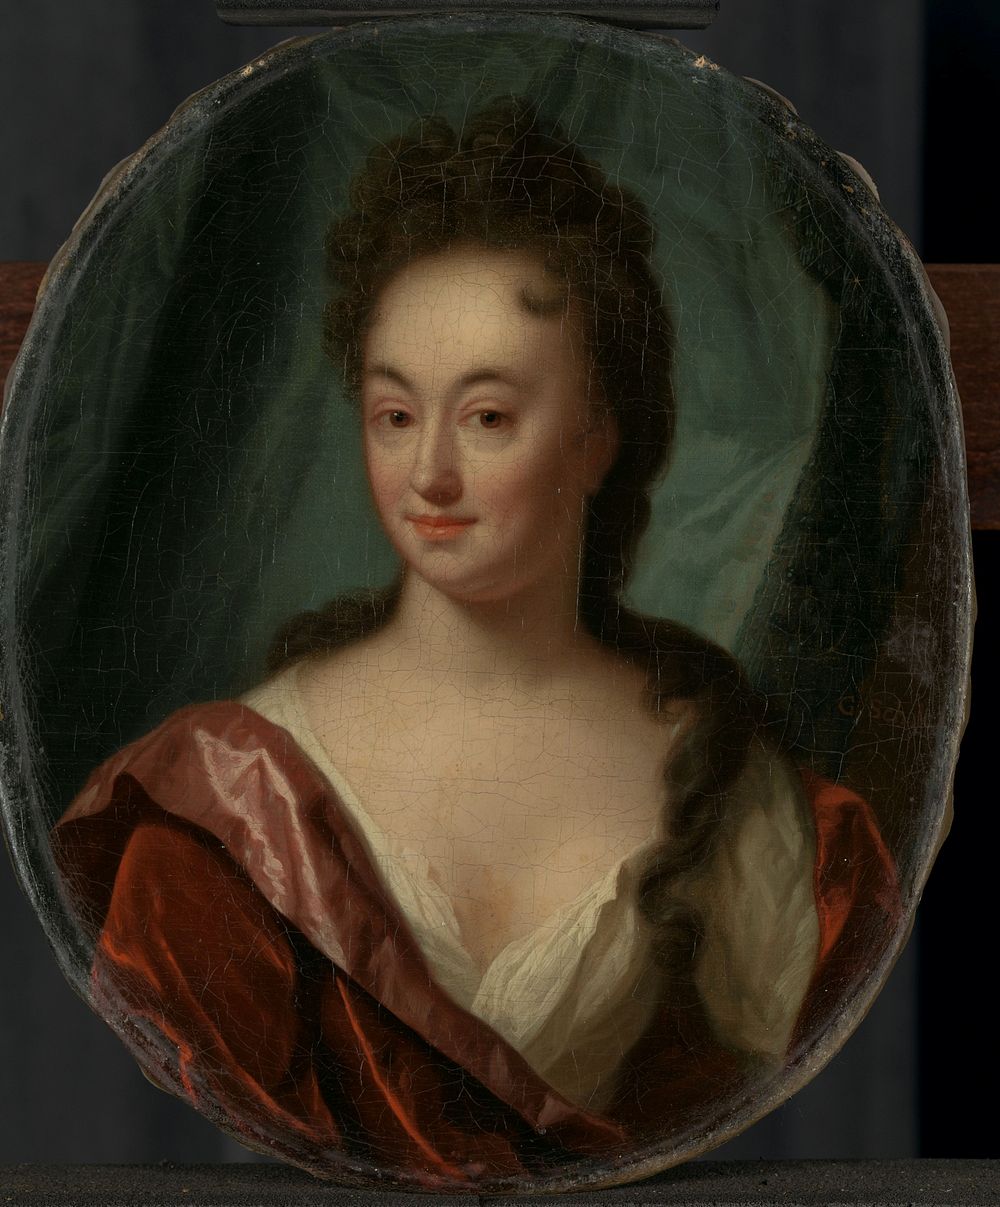 Anna Maria Gool (1699 - 1706) by Godfried Schalcken